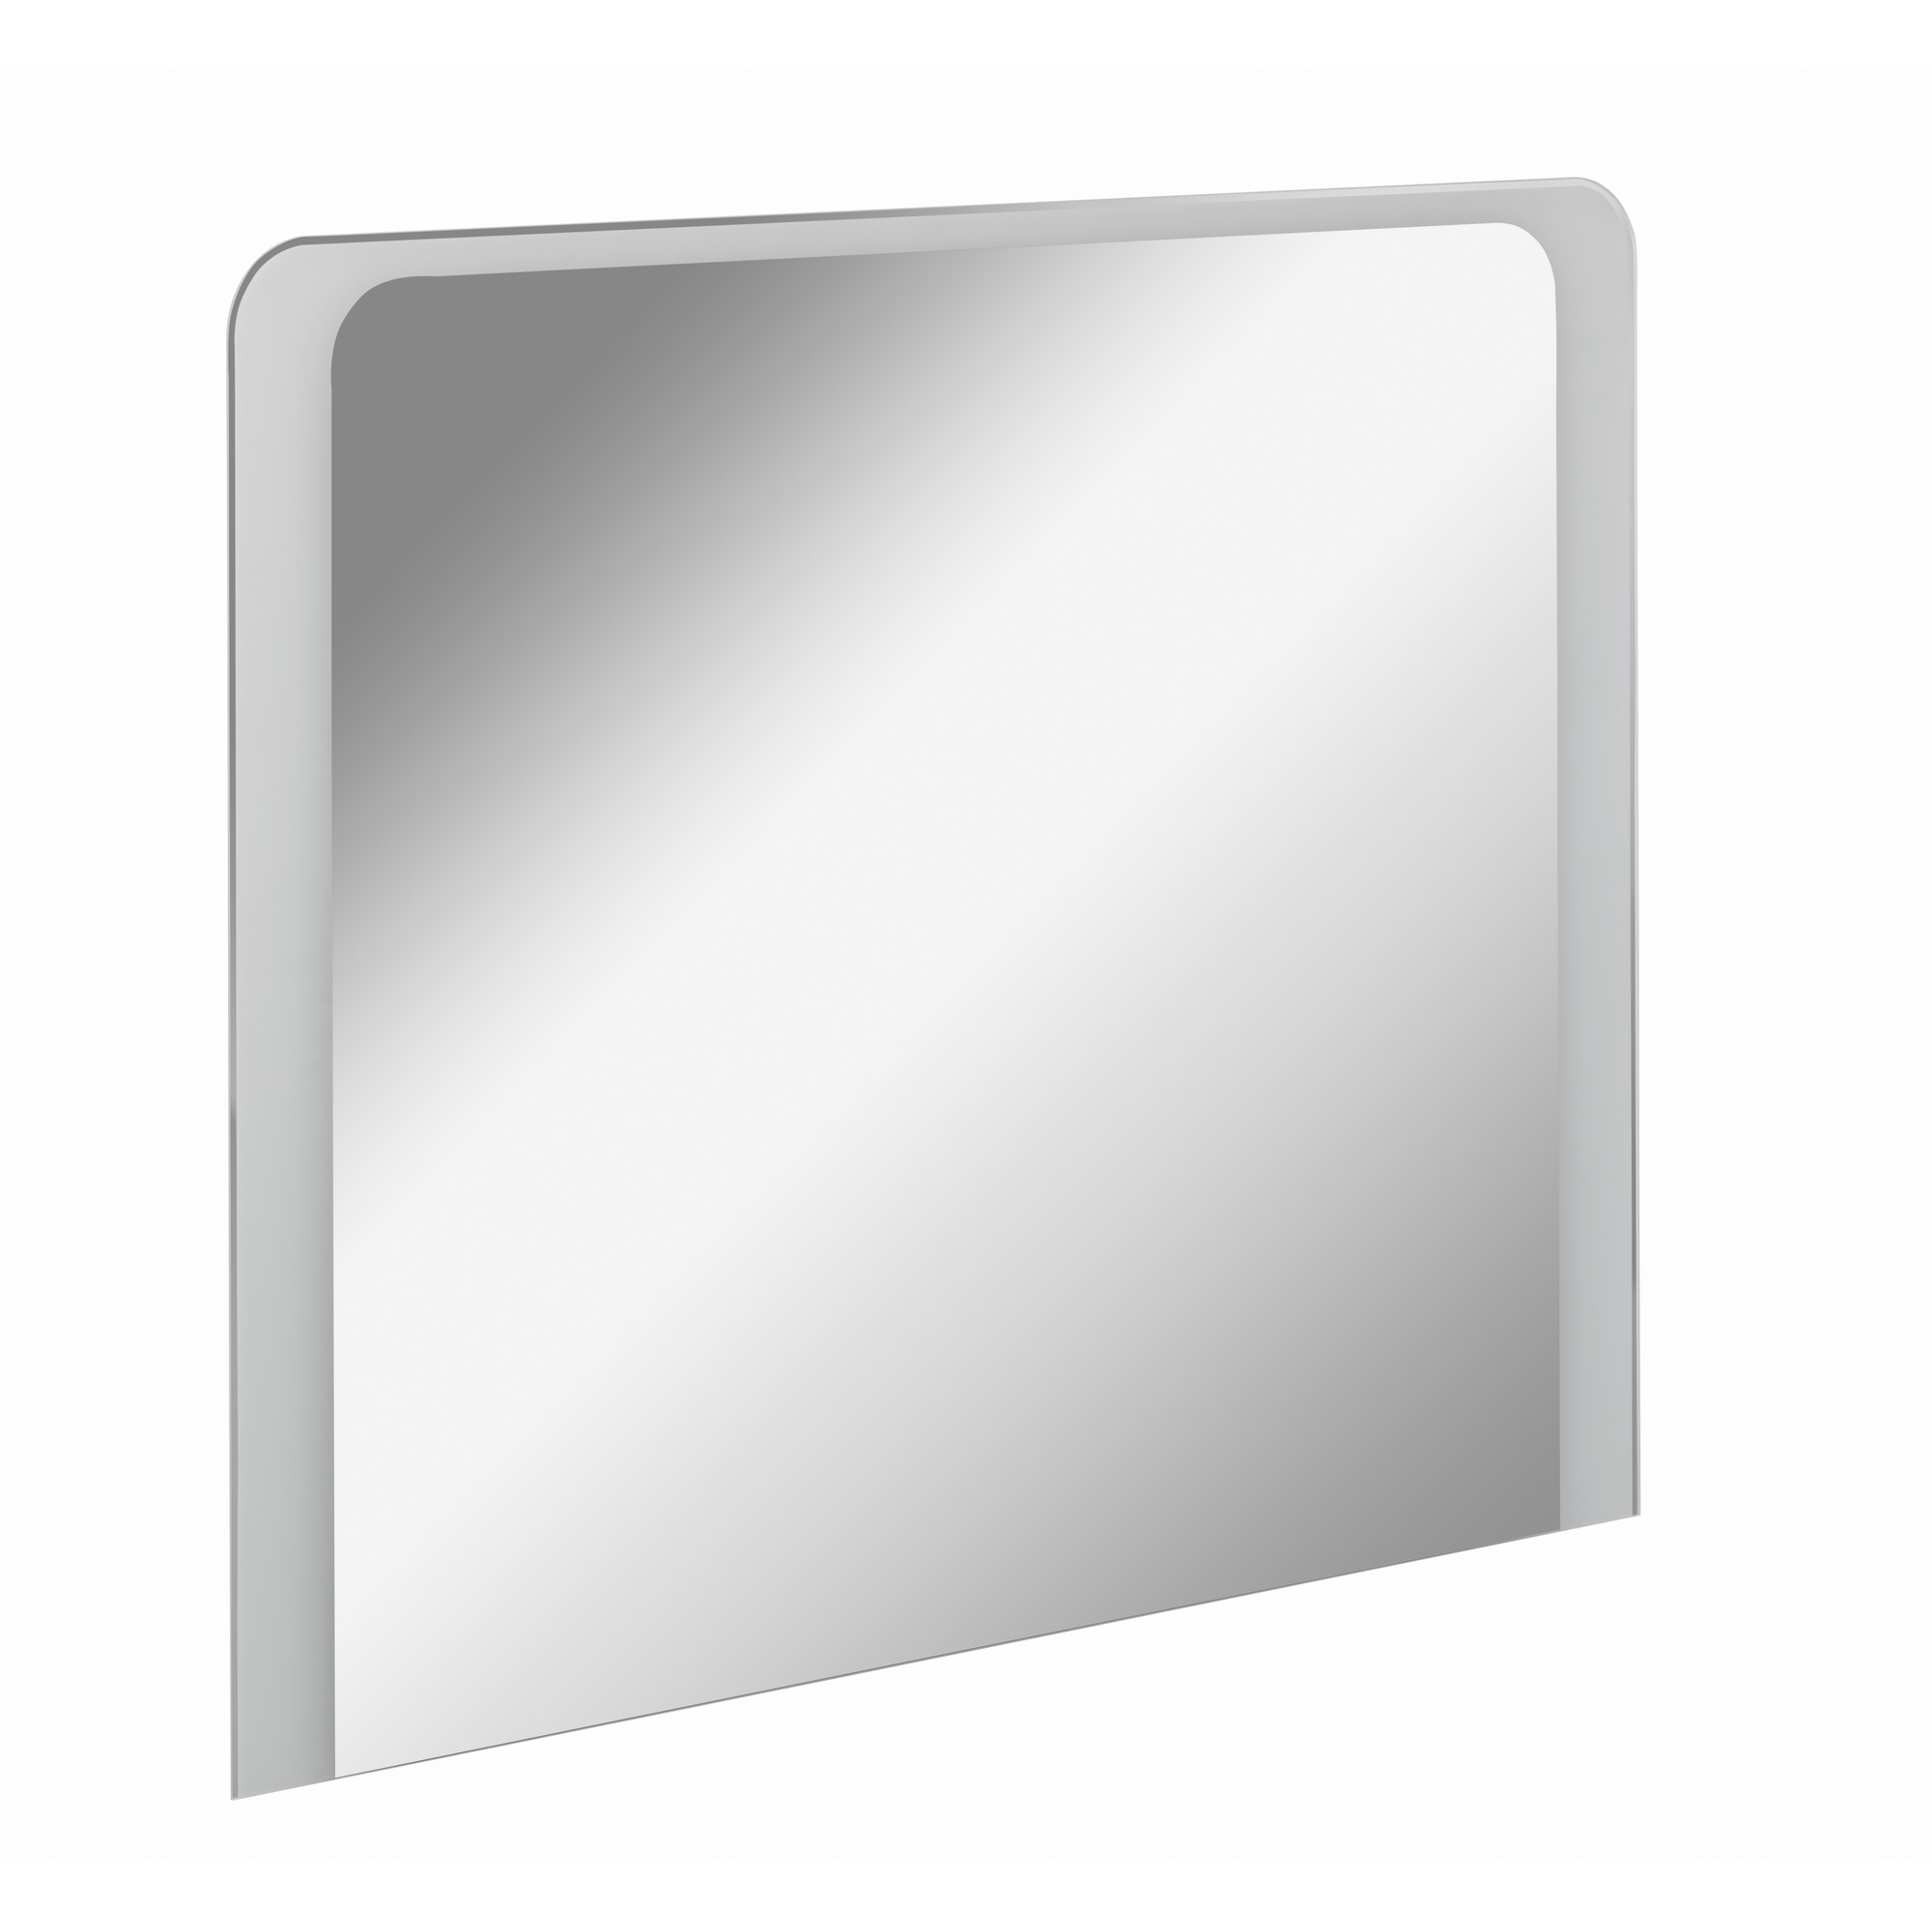 Fackelmann Spiegelelement ‚Mi 100‘ 100 x 80 x 3 cm LED umlaufend